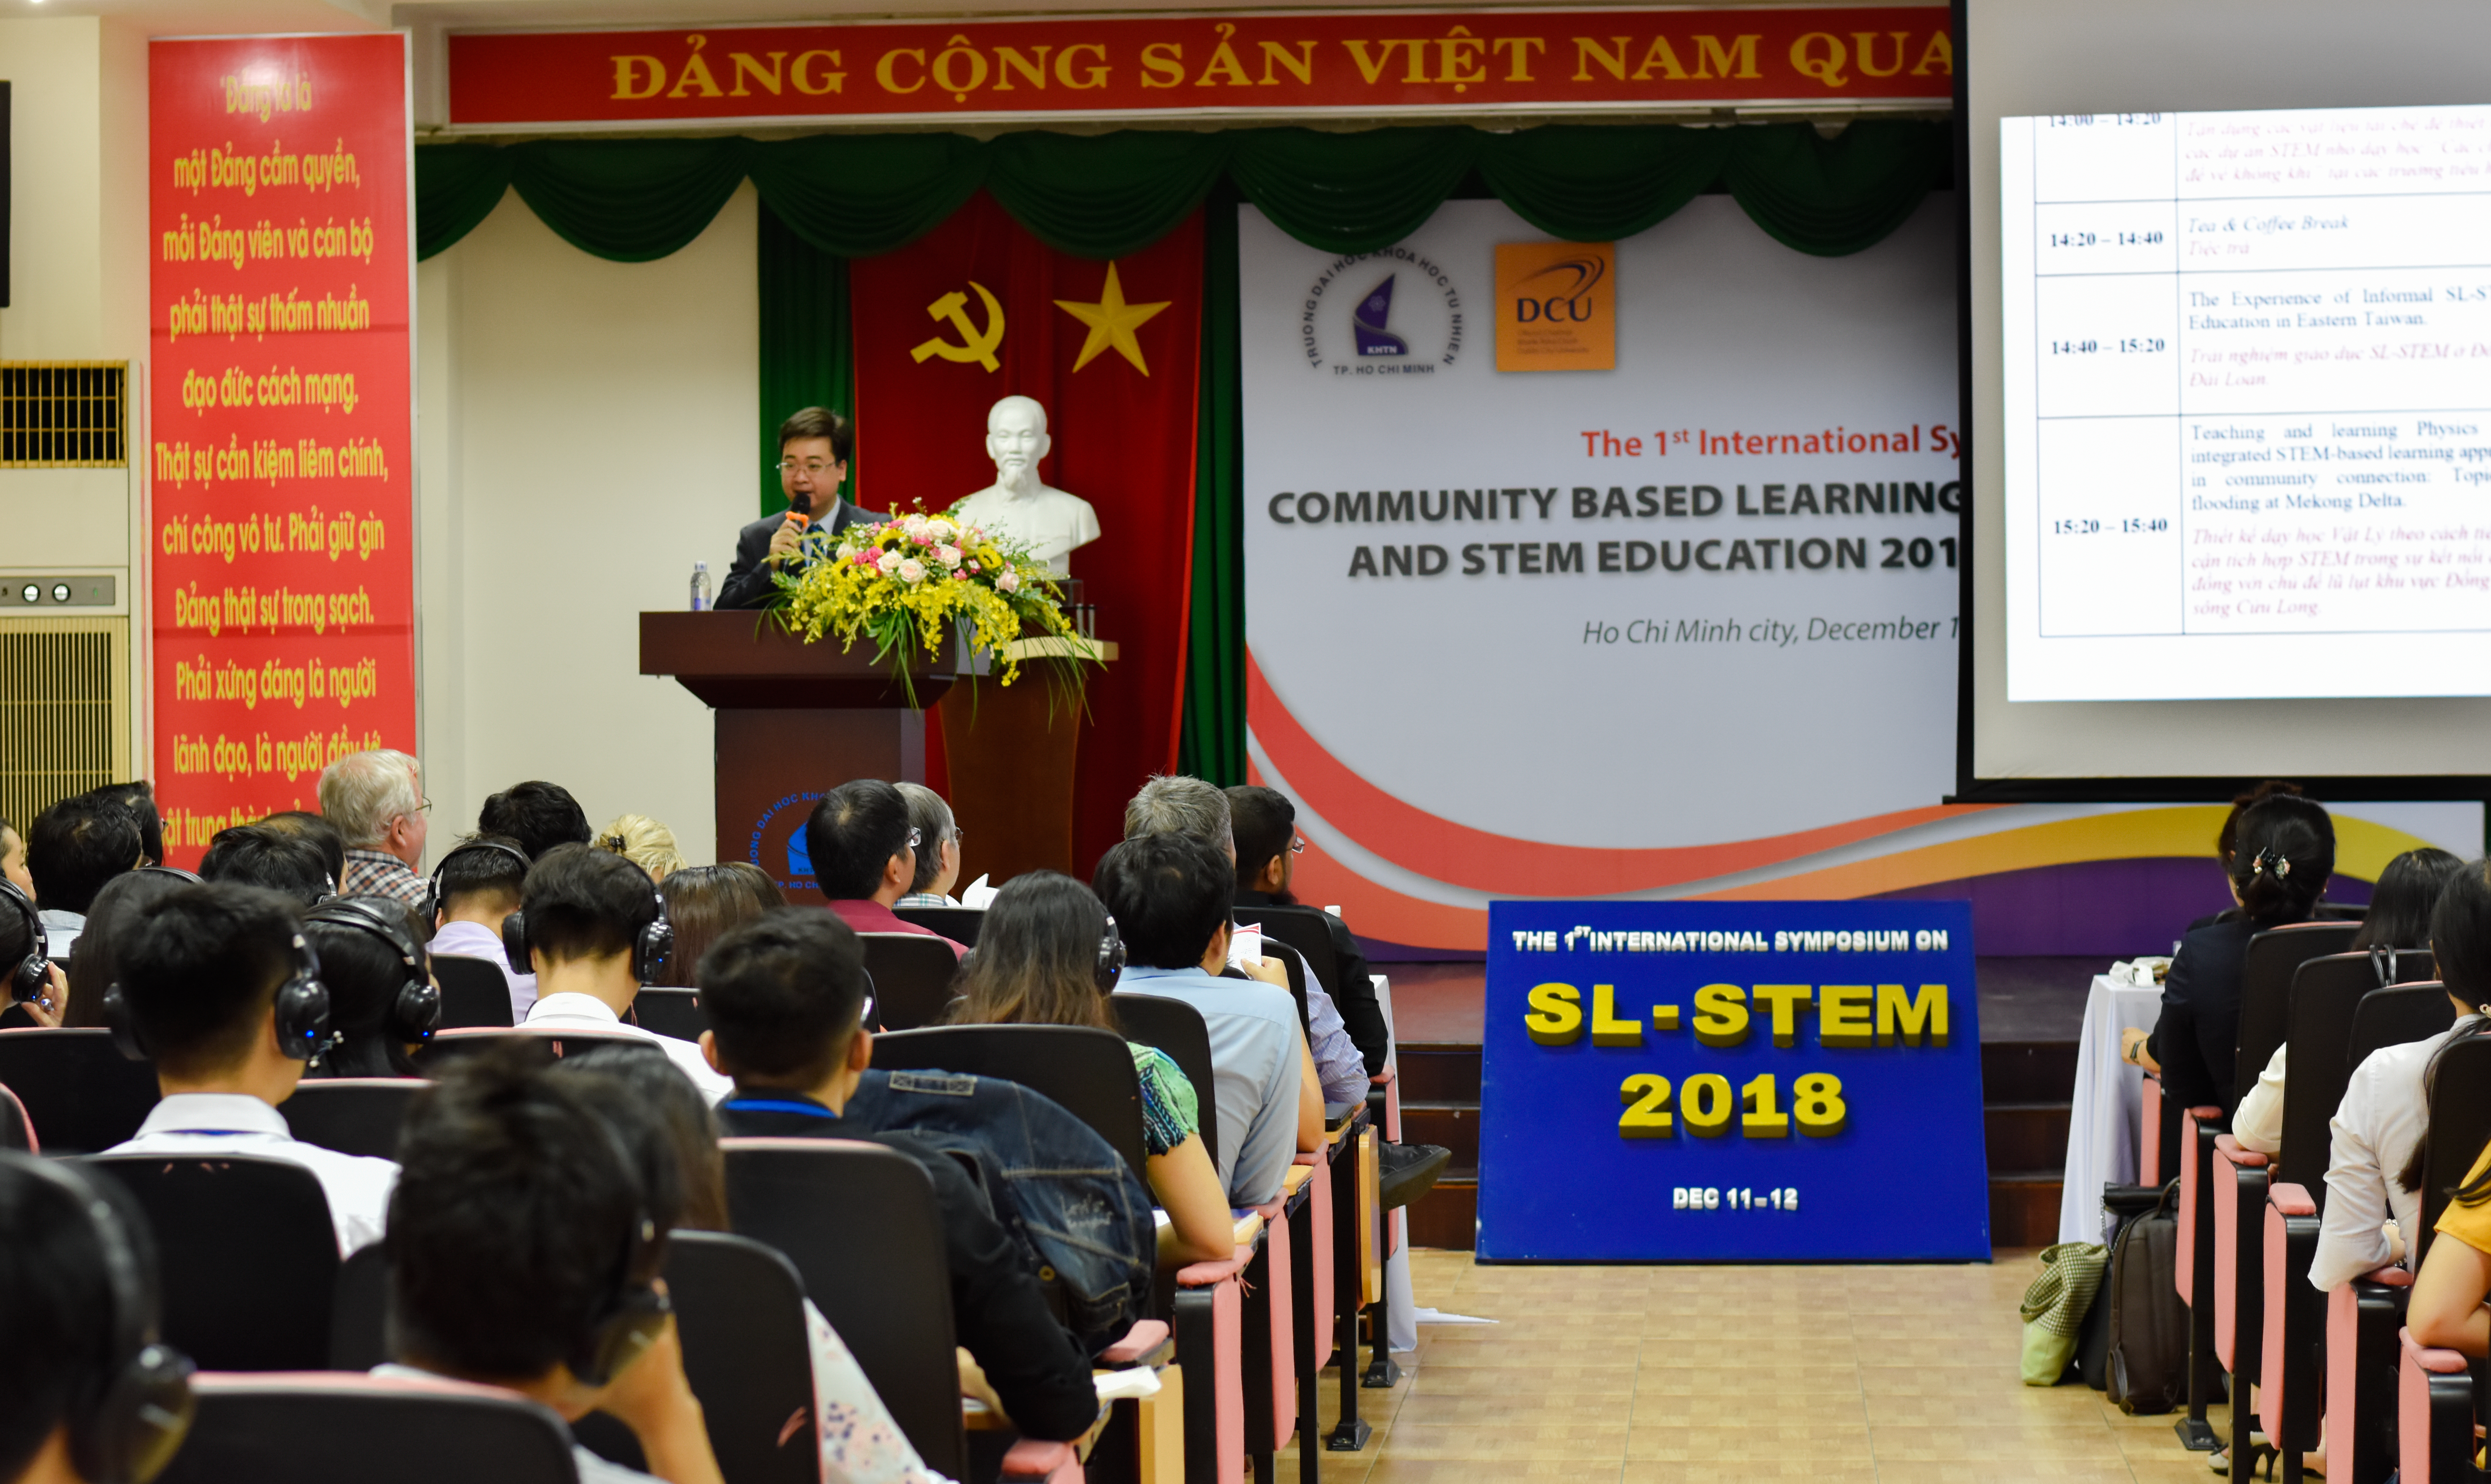 Hội thảo Quốc tế: Phát triển giáo dục Stem kết nối cộng đồng (SL-STEM) lần thứ nhất, năm 2018